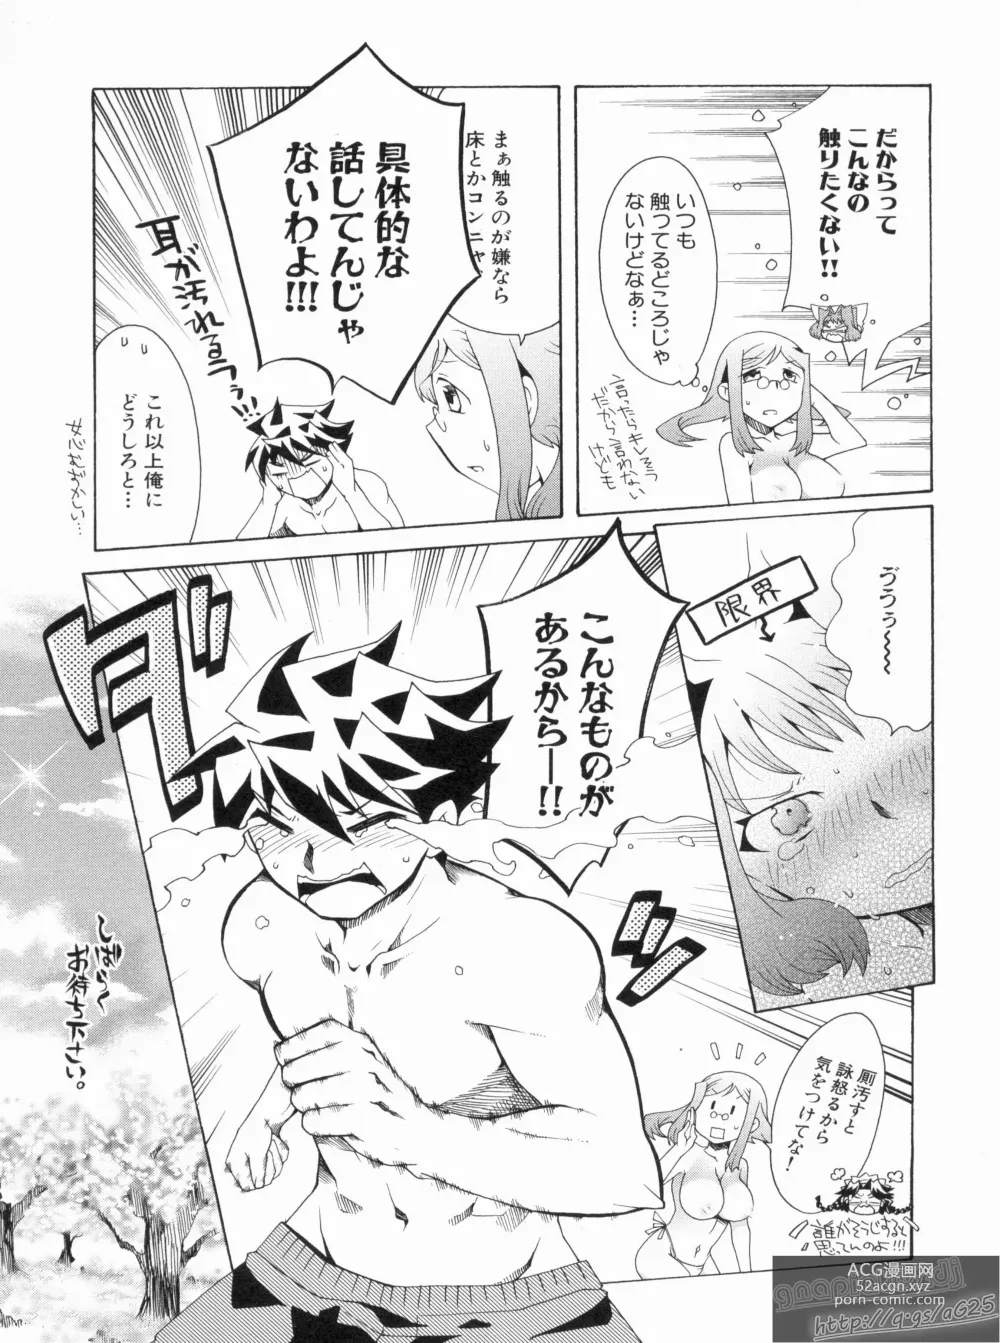 Page 13 of manga Shin Koihime Musou Gaishi Saiten VOL.2